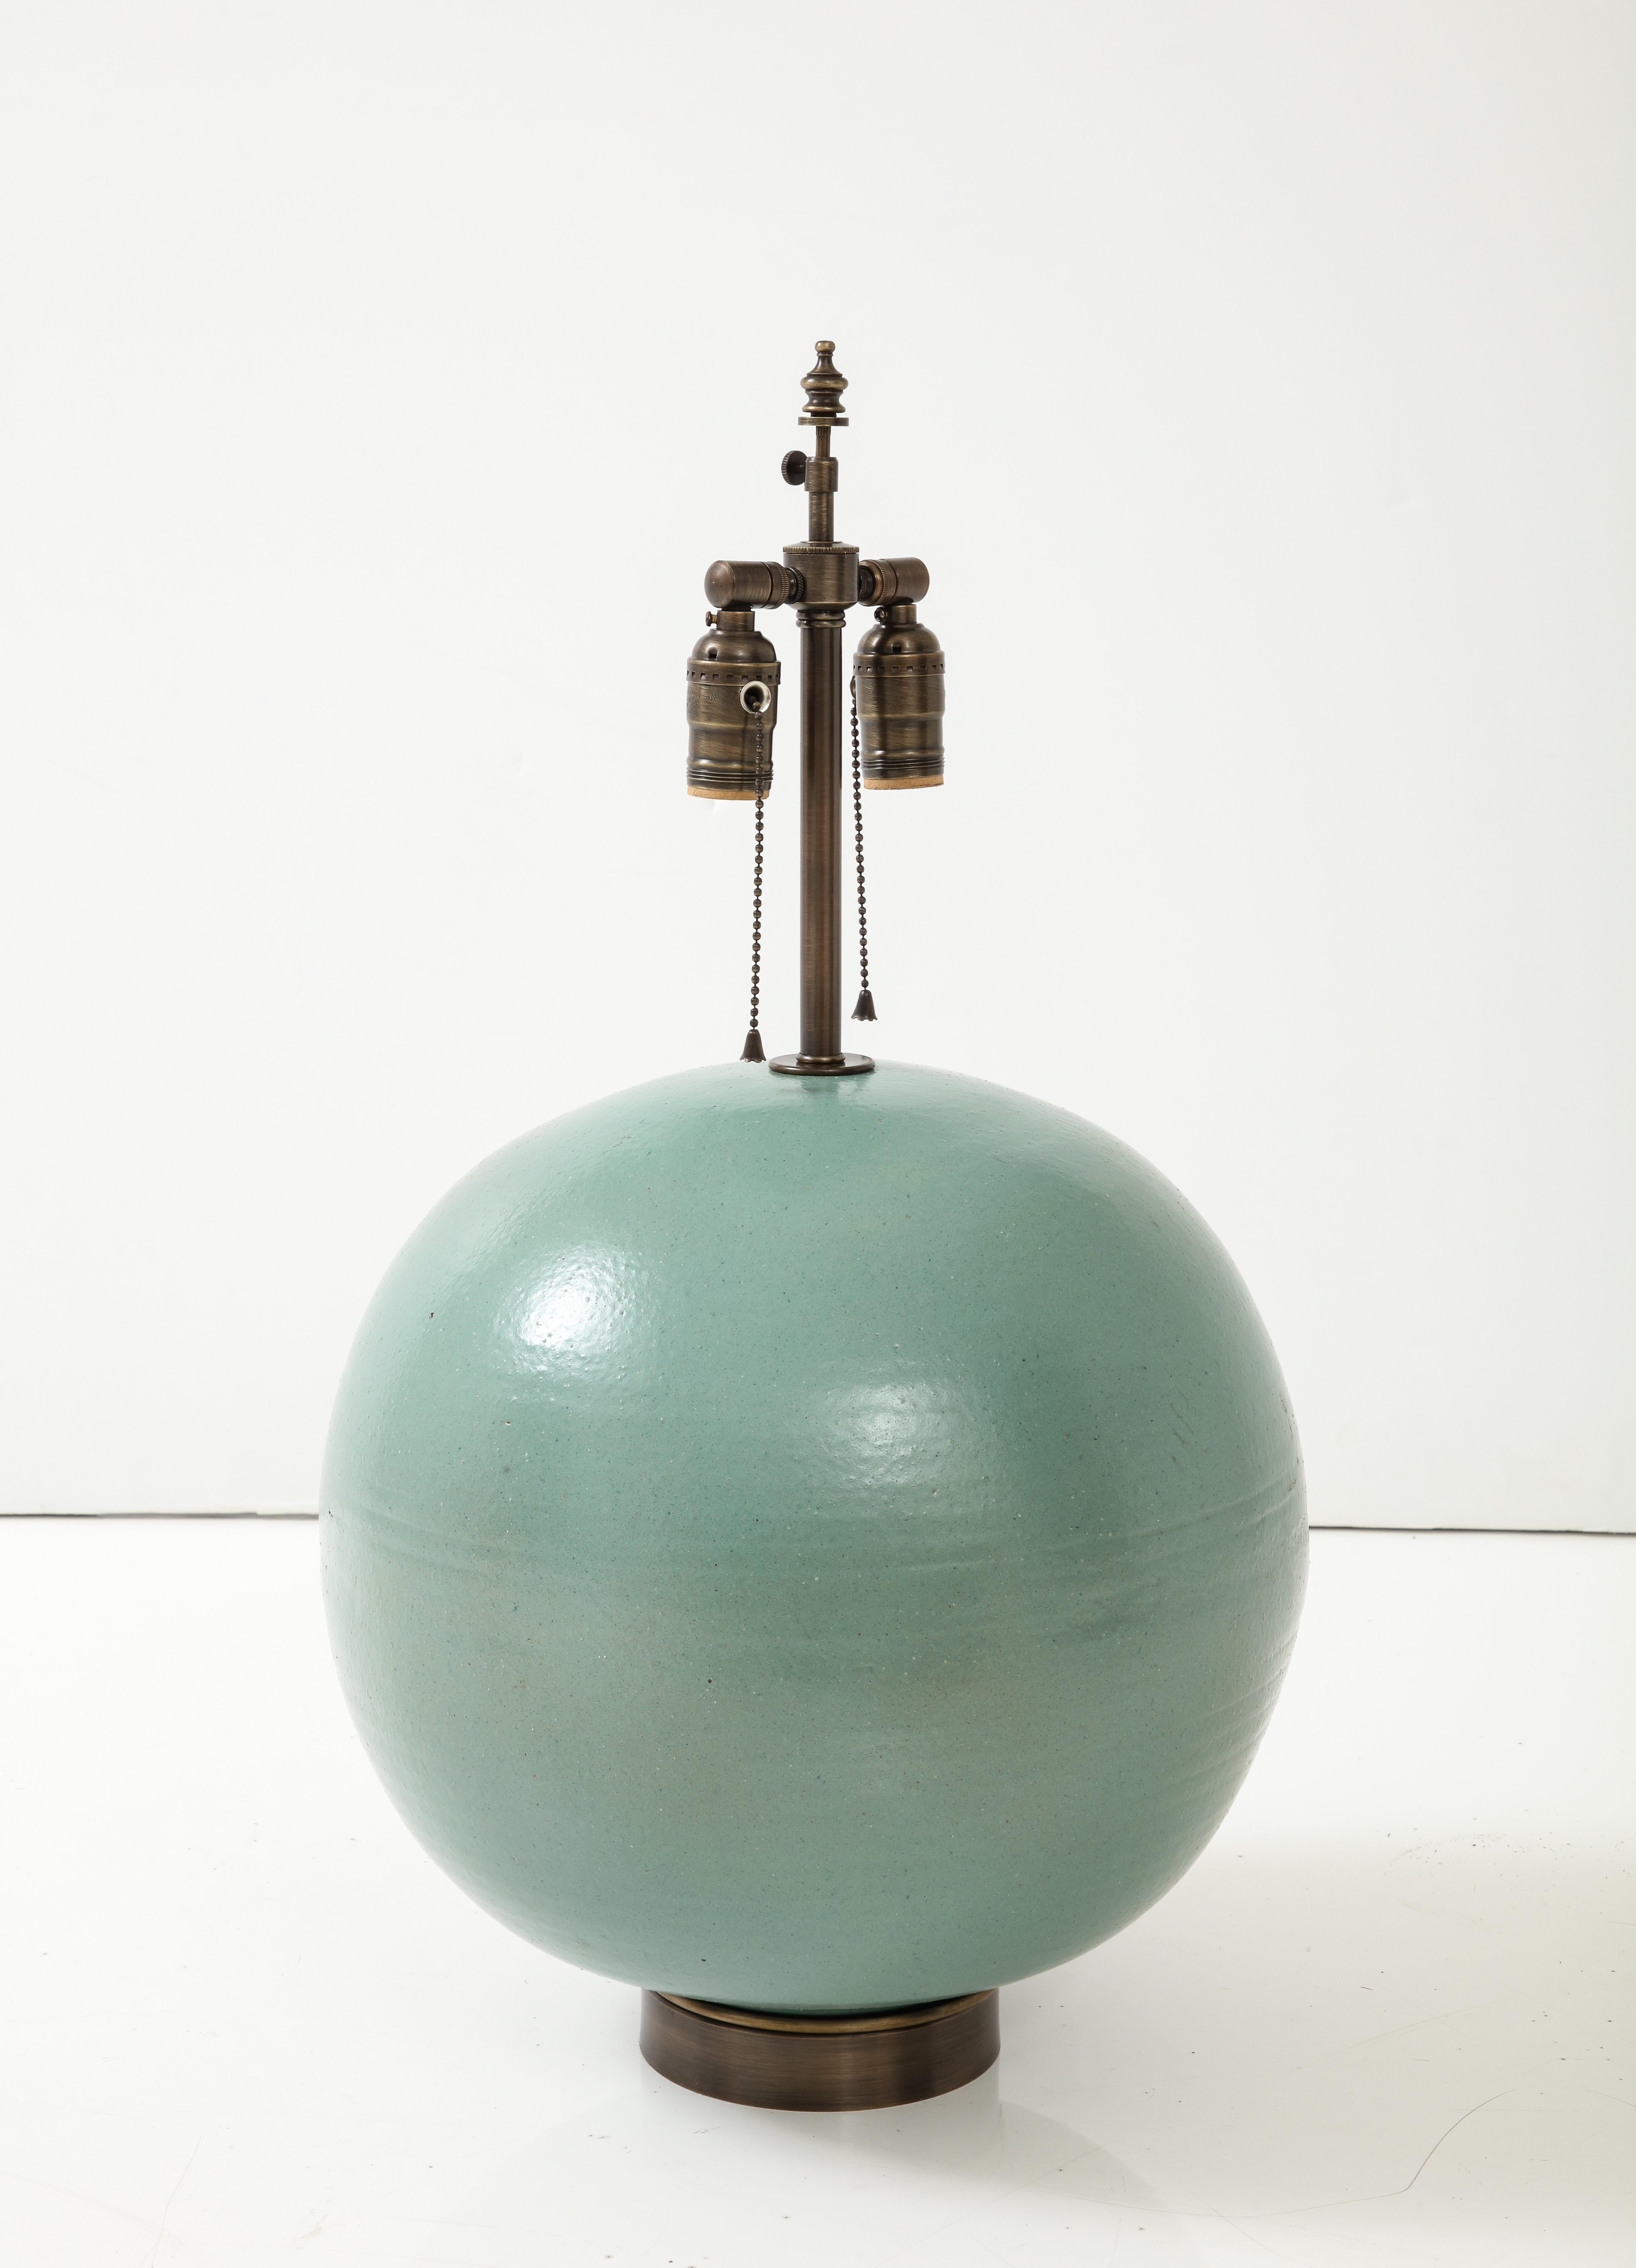 Lampe en céramique de style Art Déco français, avec une glaçure mate turquoise à peau d'orange, posée sur une base en bronze. Les lampes ont été recâblées pour une utilisation aux États-Unis par un électricien agréé UL. Ampoules de 75W max. 

La